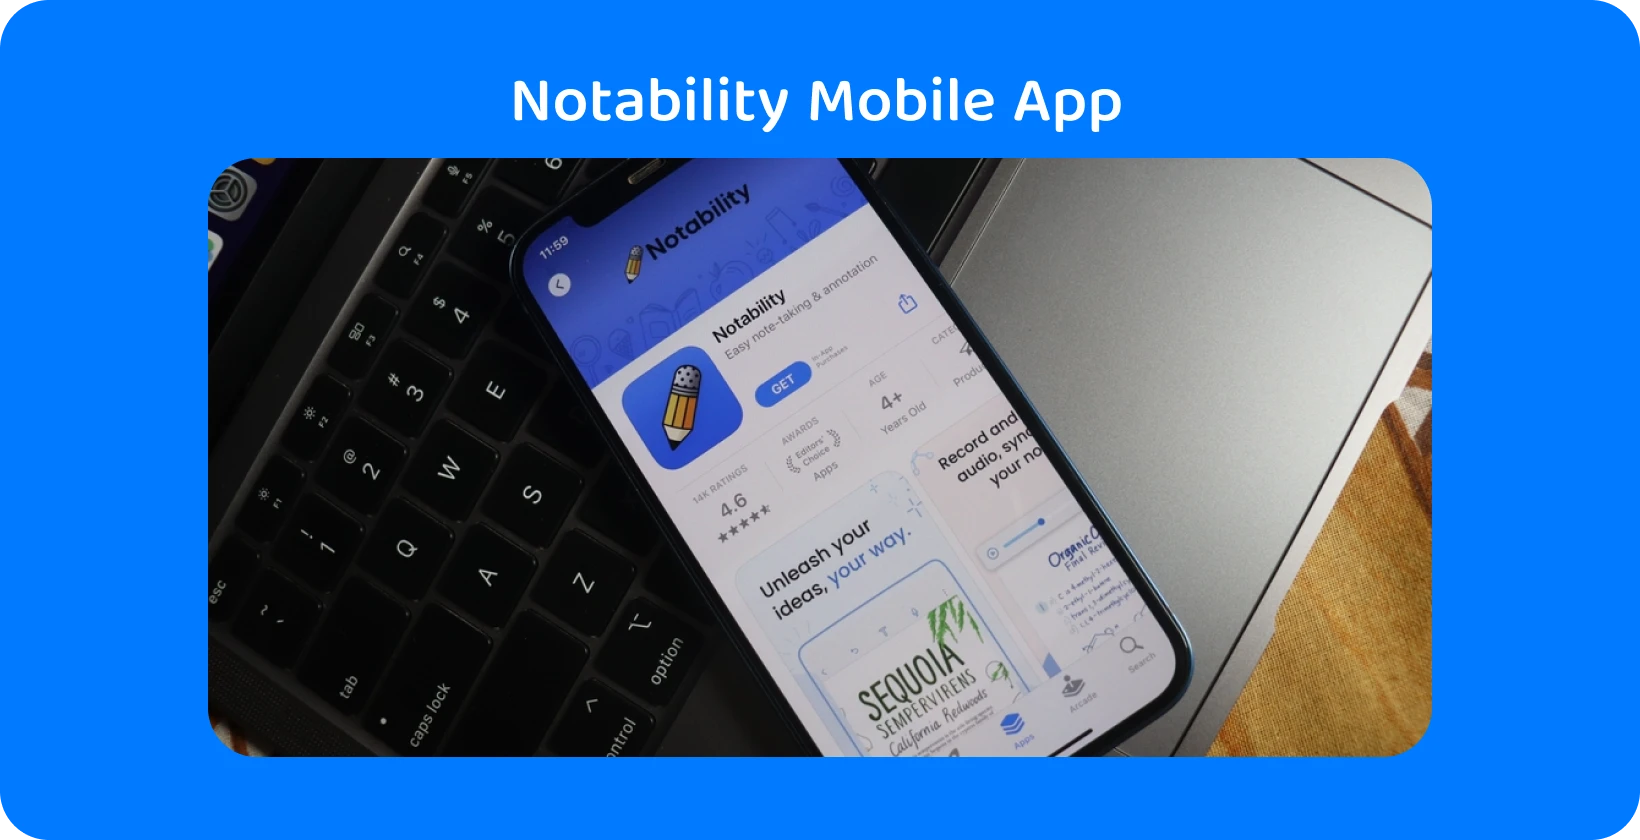 Application Notability sur l’écran du smartphone avec fonction de transcription, présentant des capacités audio-texte.